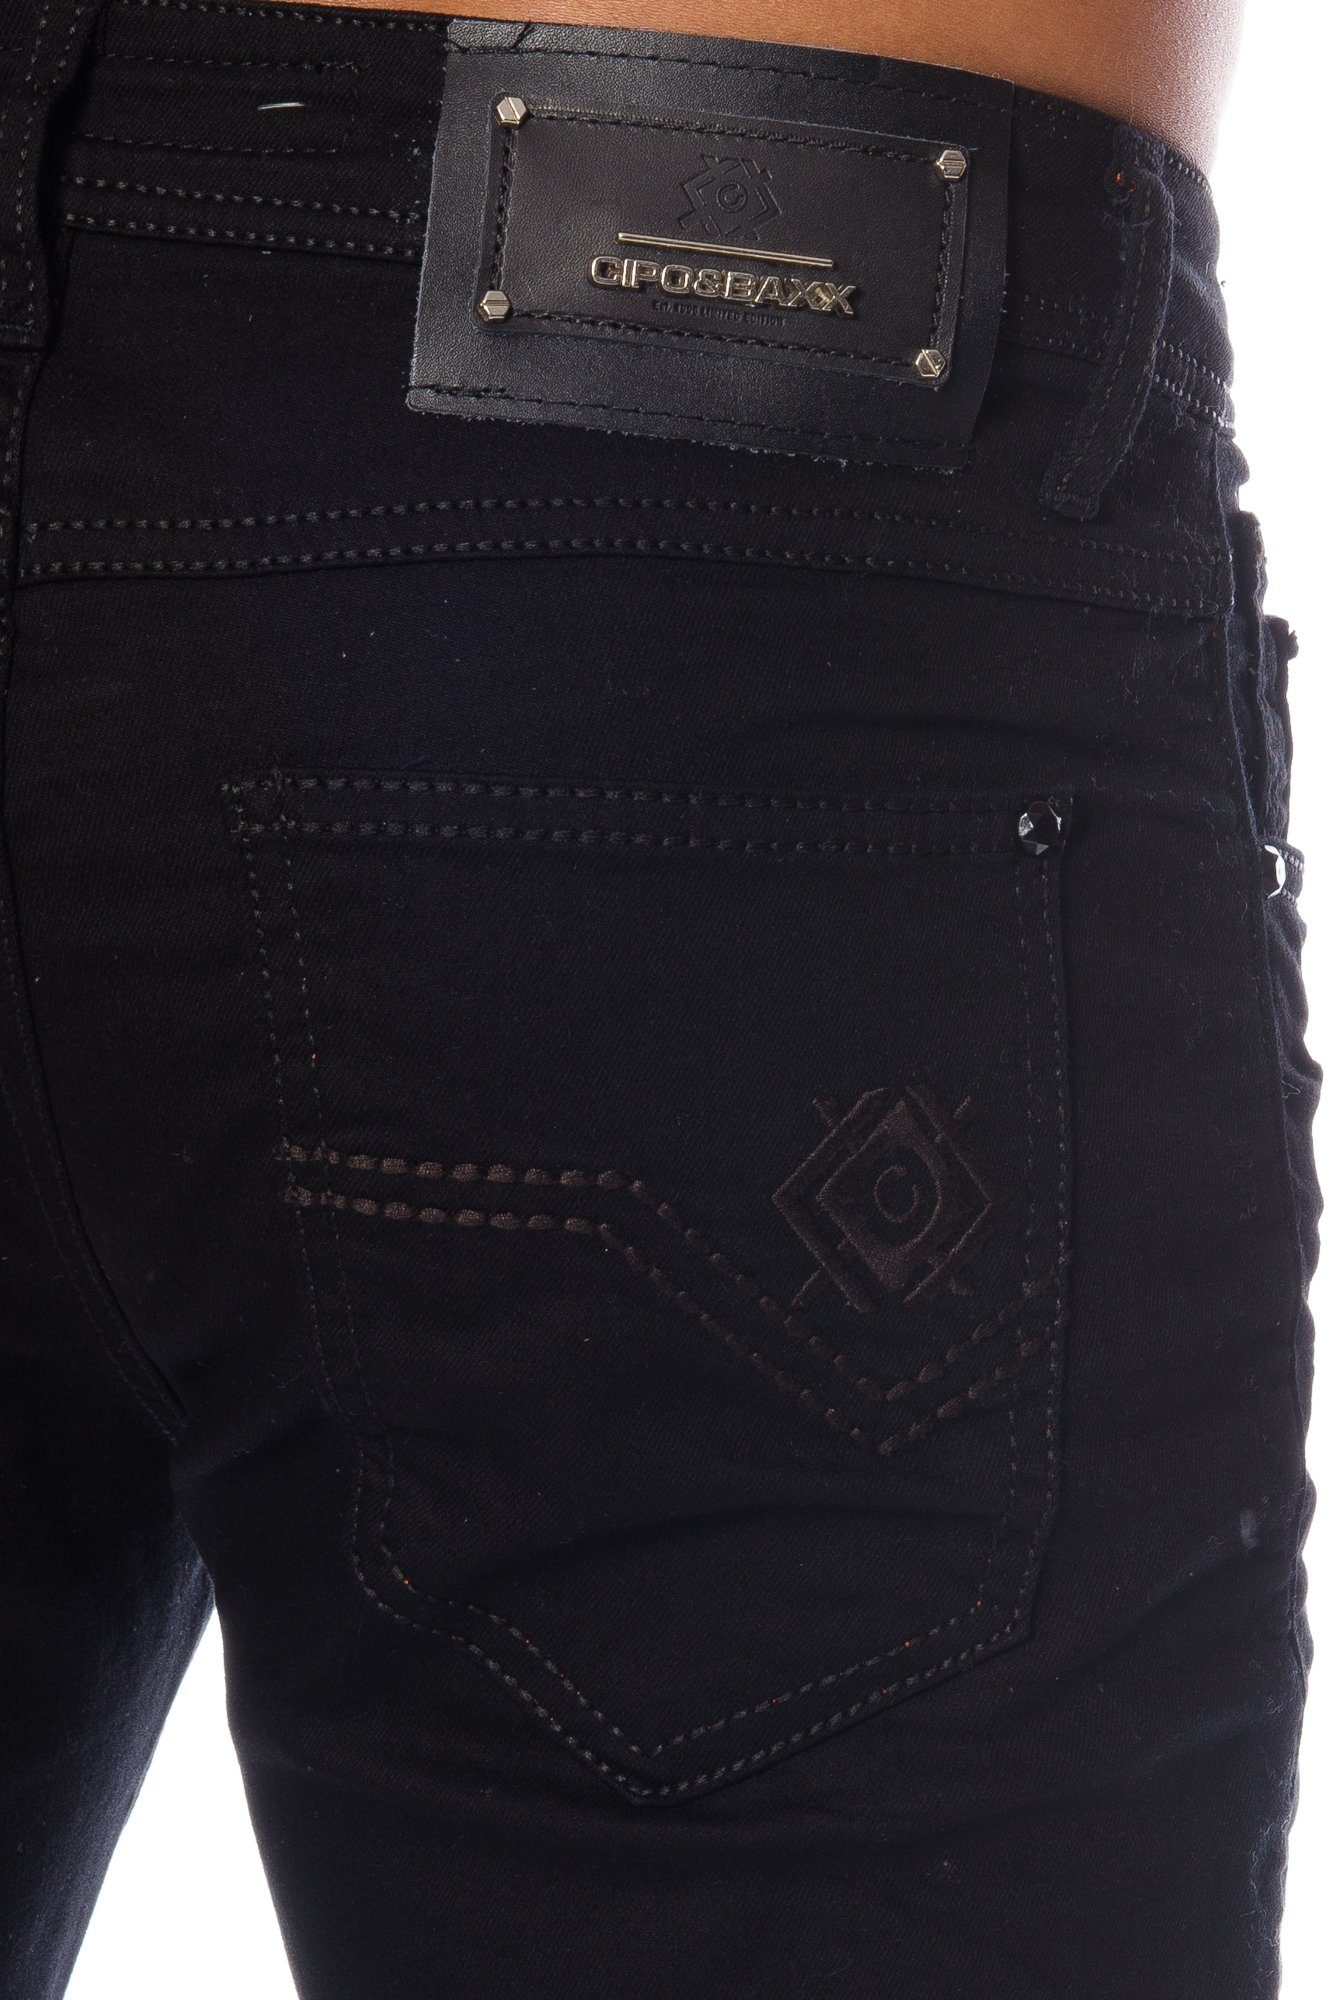 Cipo & Baxx Slim-fit-Jeans dezenten Elastisches Jeans Hose angenehmen Tragekomfort Herren Look für dicken Nähten Material im mit basic